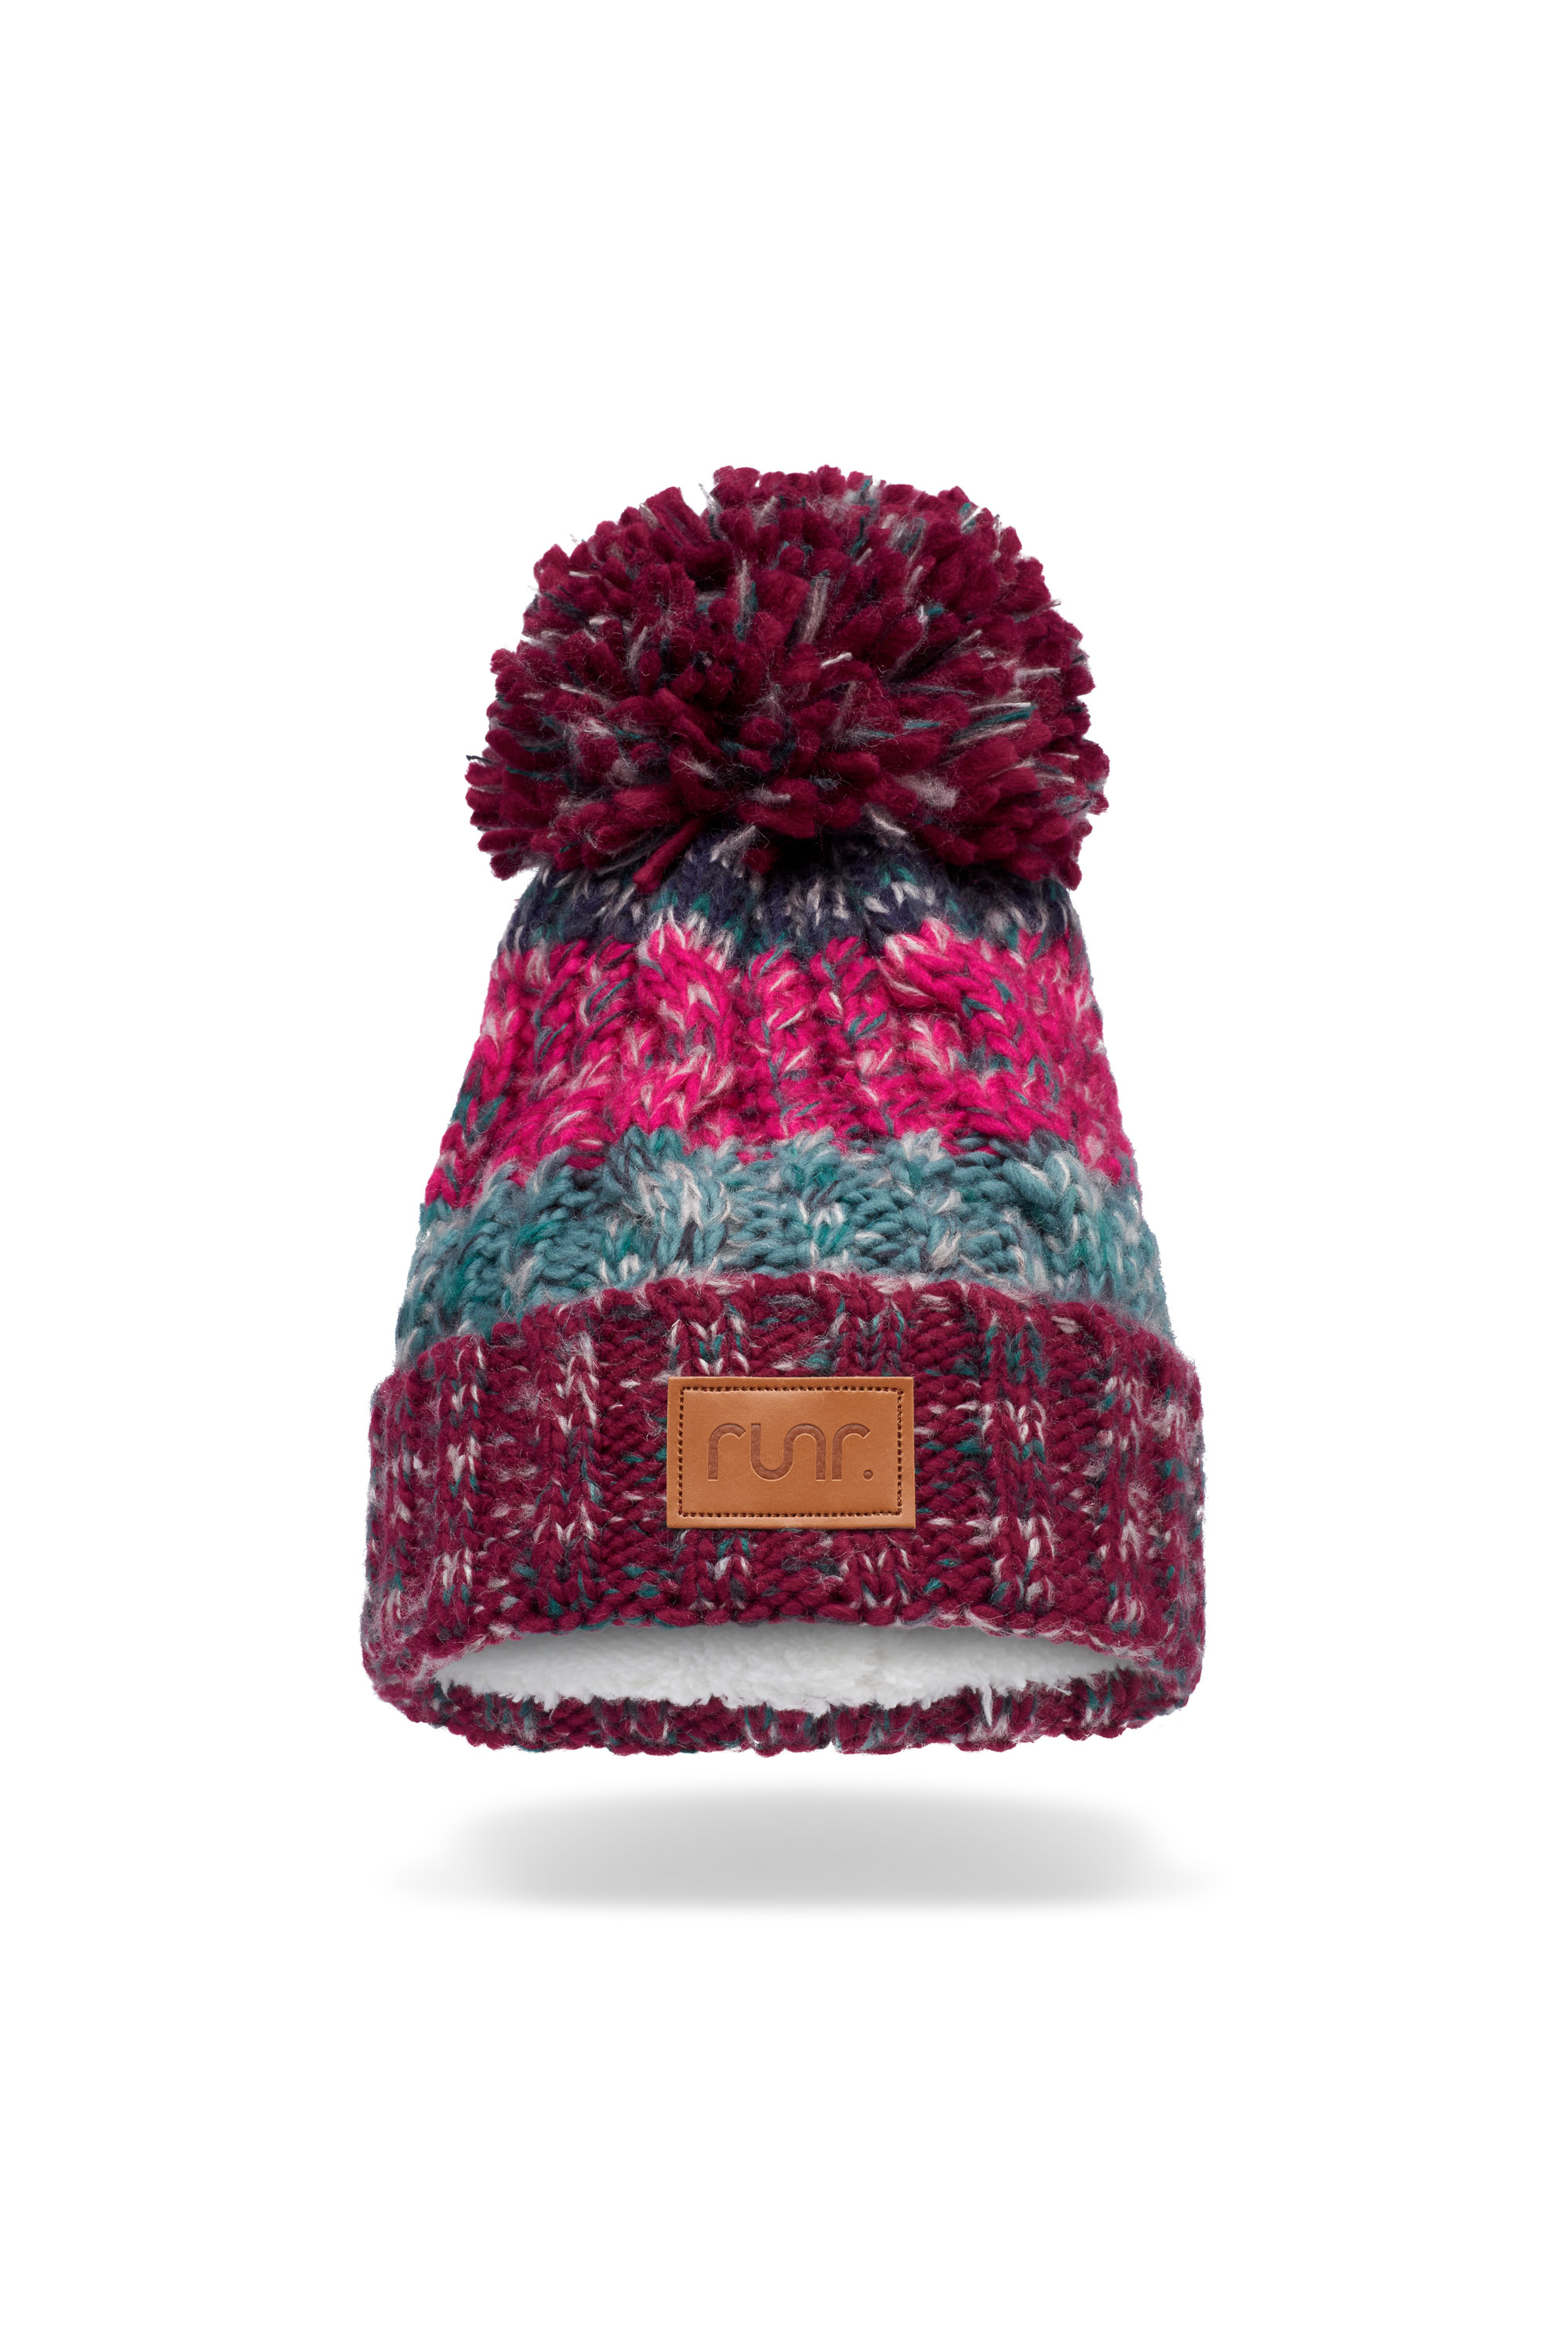 Runr Winter Bobble Hat - Aspen